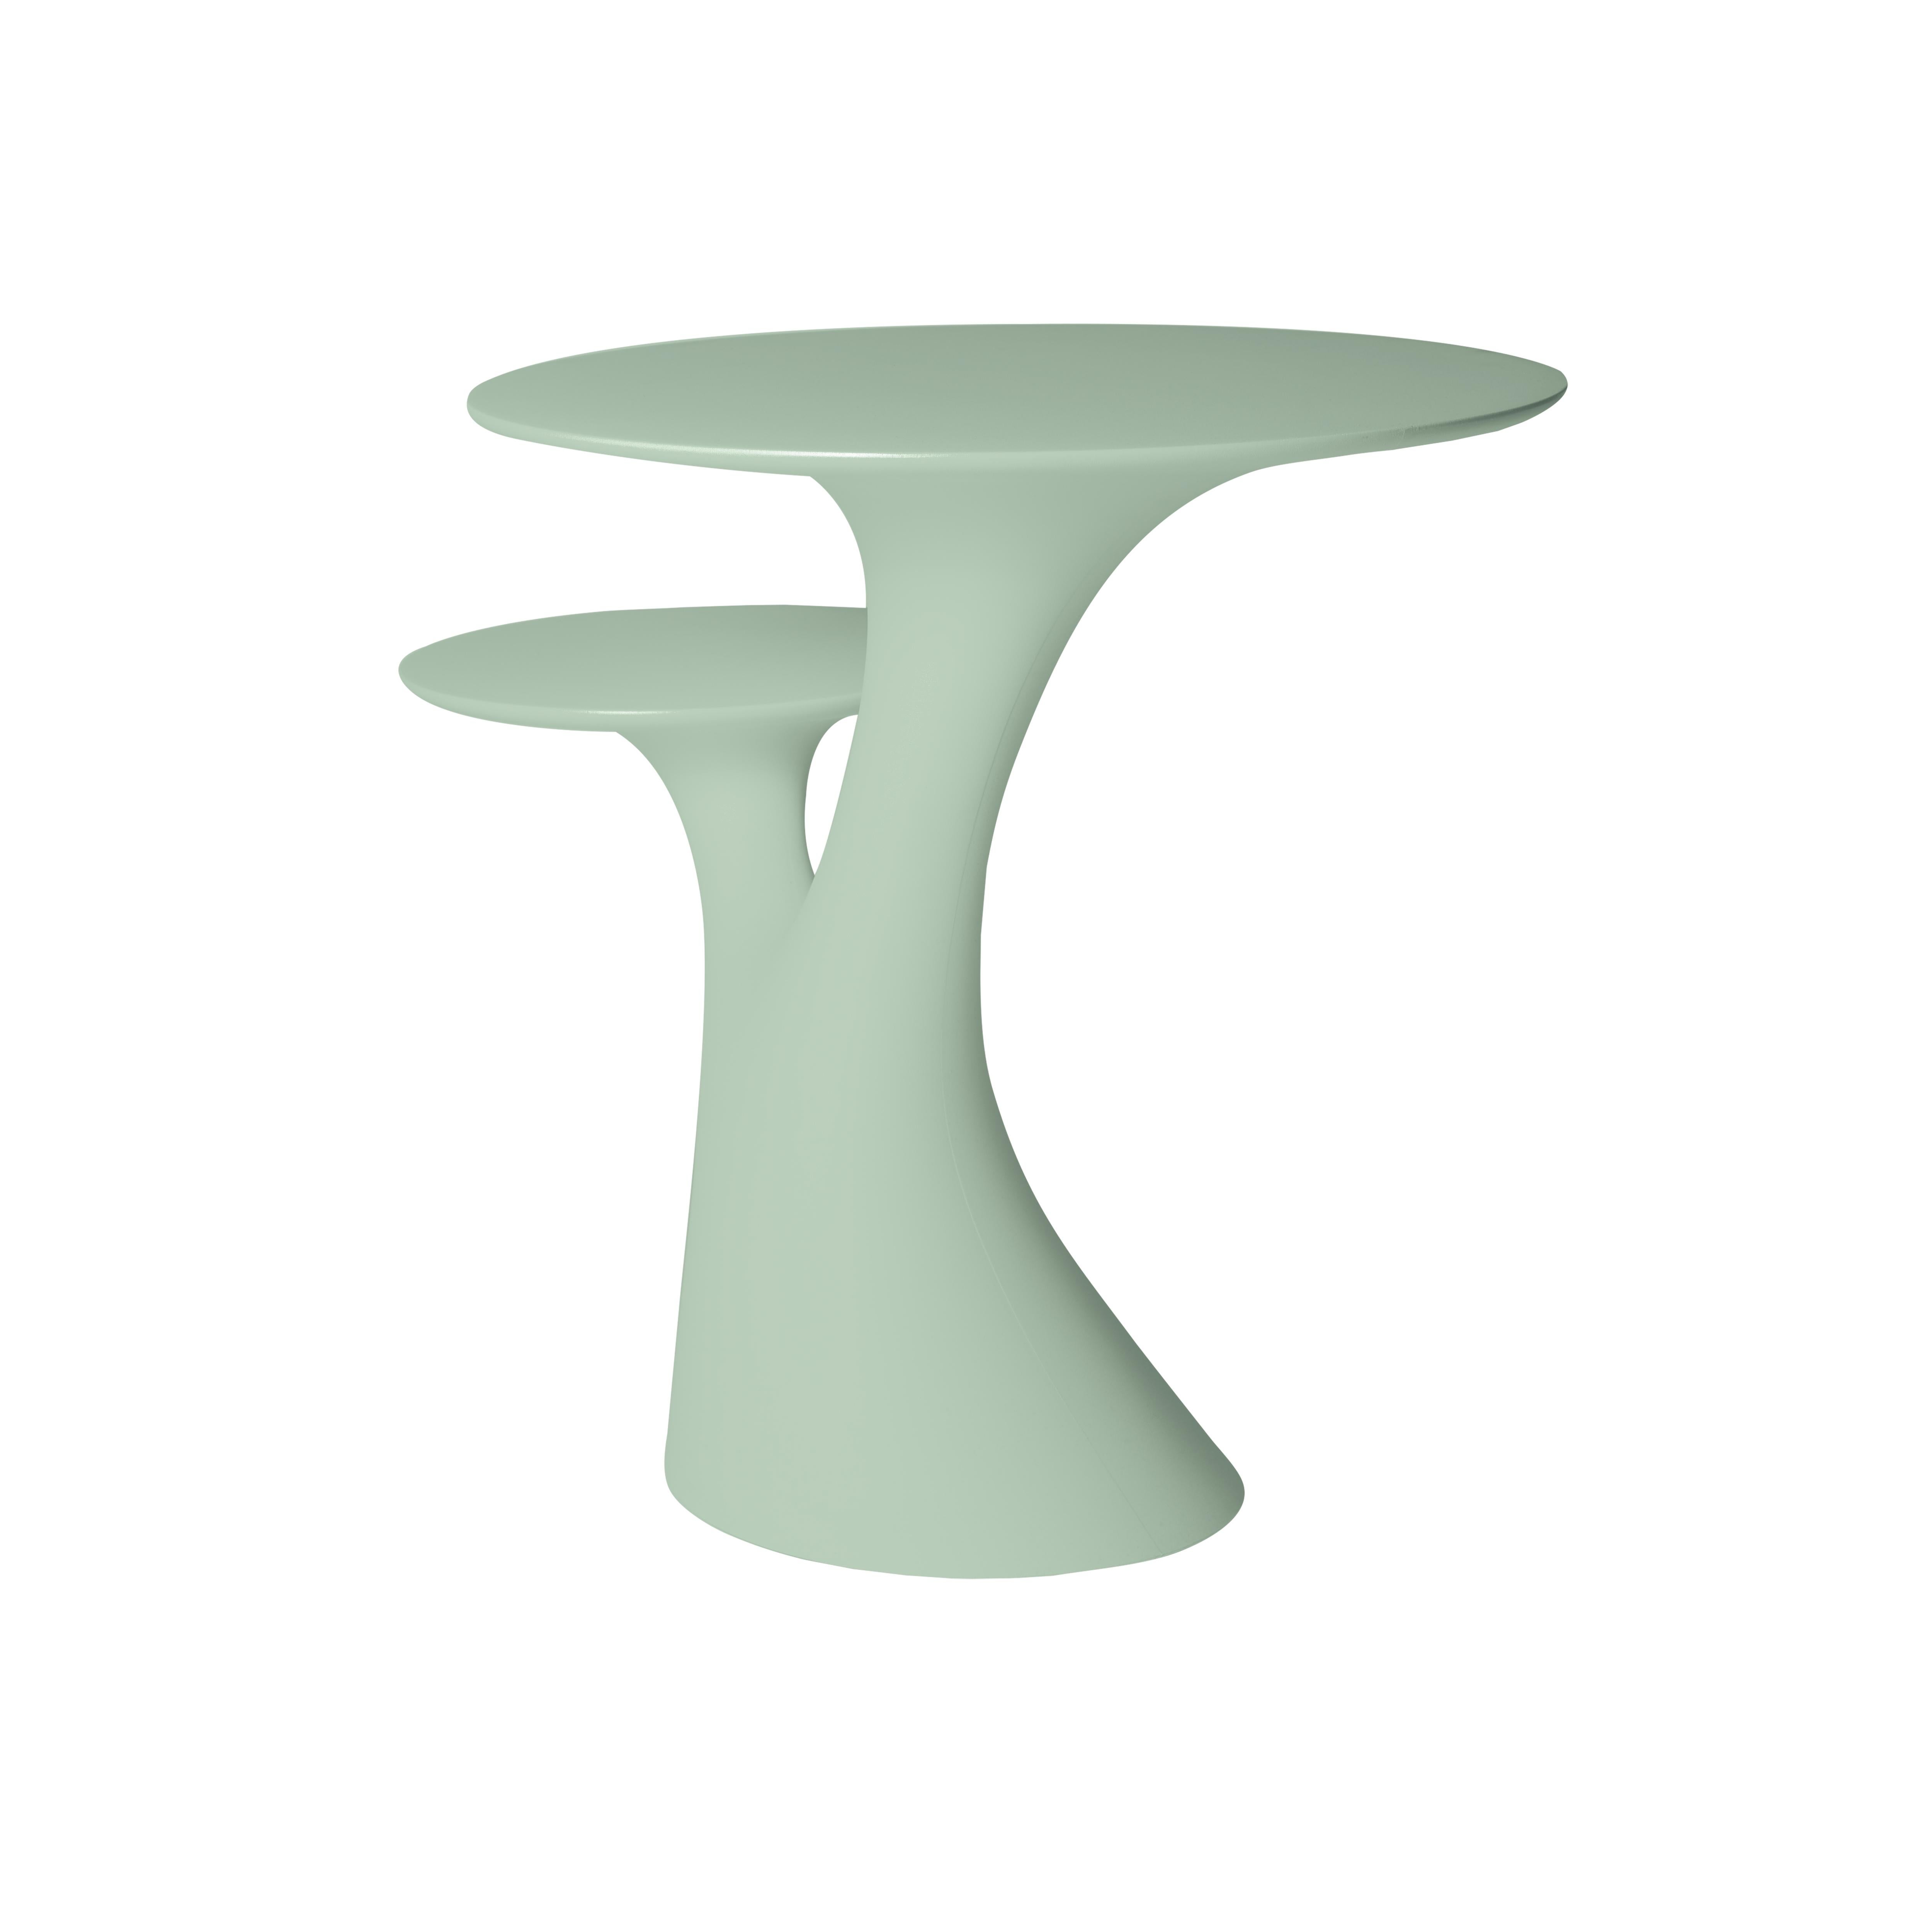 En vente : Green (Balsam Green) Table d'appoint moderne en plastique blanc, gris, vert, rose ou en forme d'arbre par Stefano Giovannoni